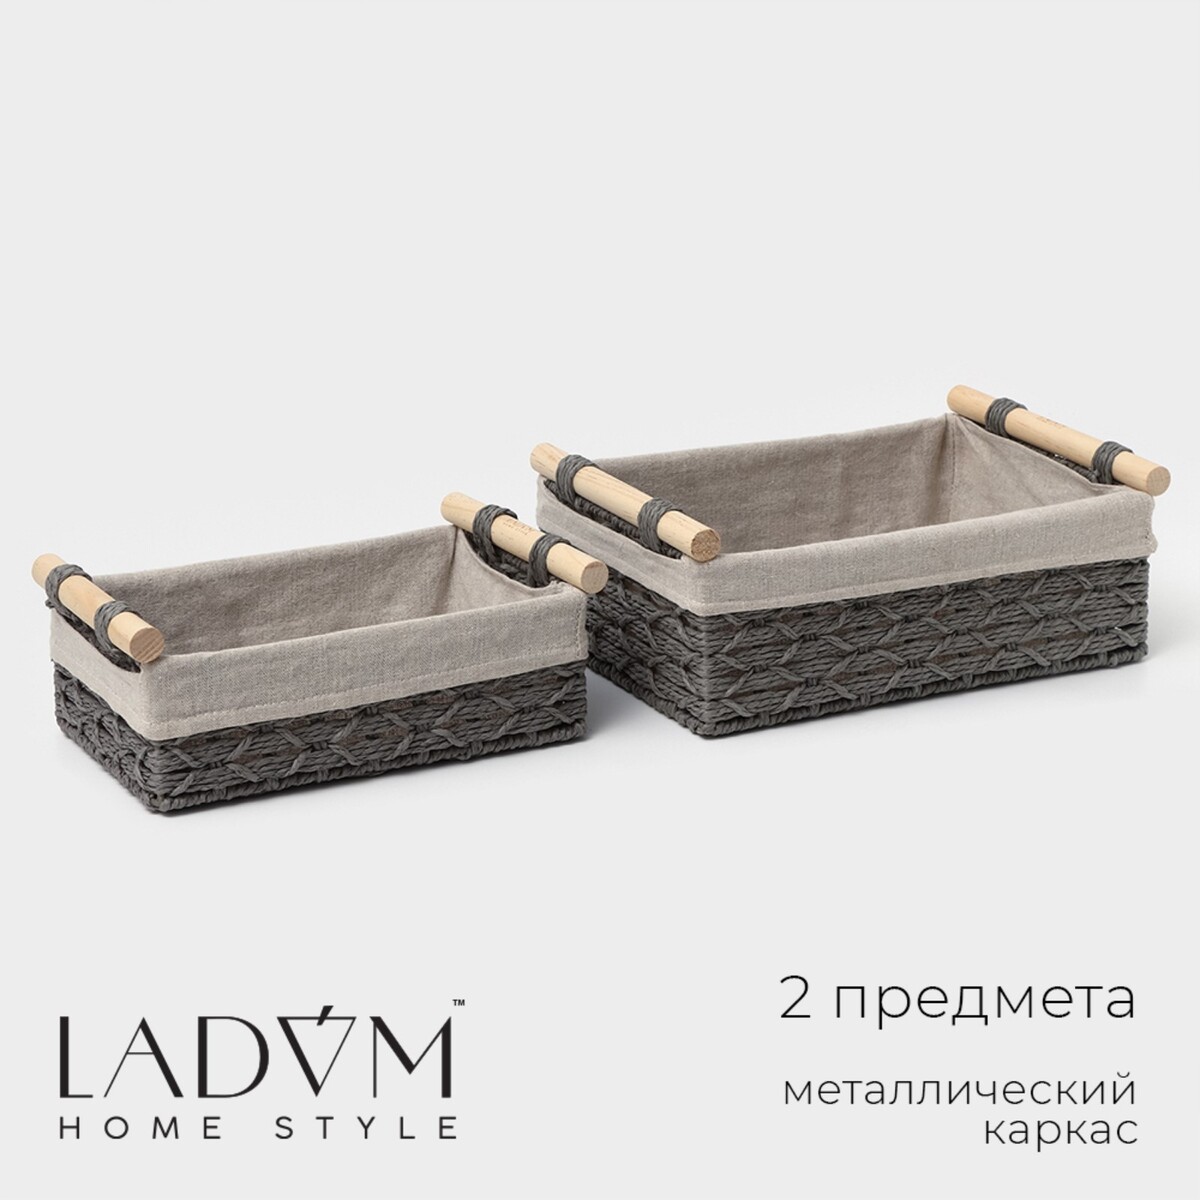 Набор корзин для хранения с ручками ladо́m, ручное плетение, 2 шт: 26×15×10 см, 31×20×12 см, цвет серый